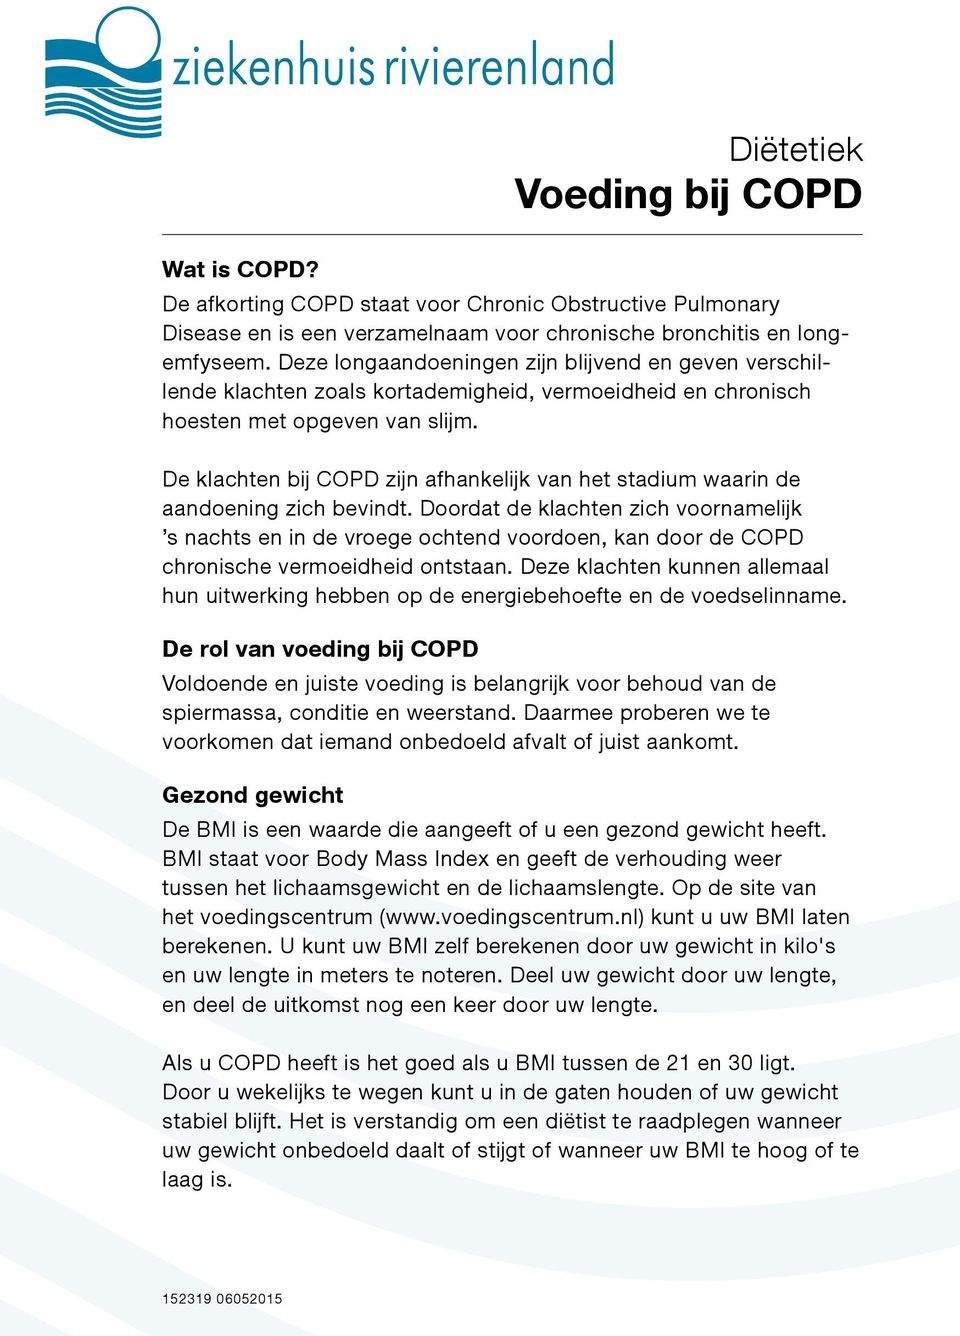 De klachten bij COPD zijn afhankelijk van het stadium waarin de aandoening zich bevindt.